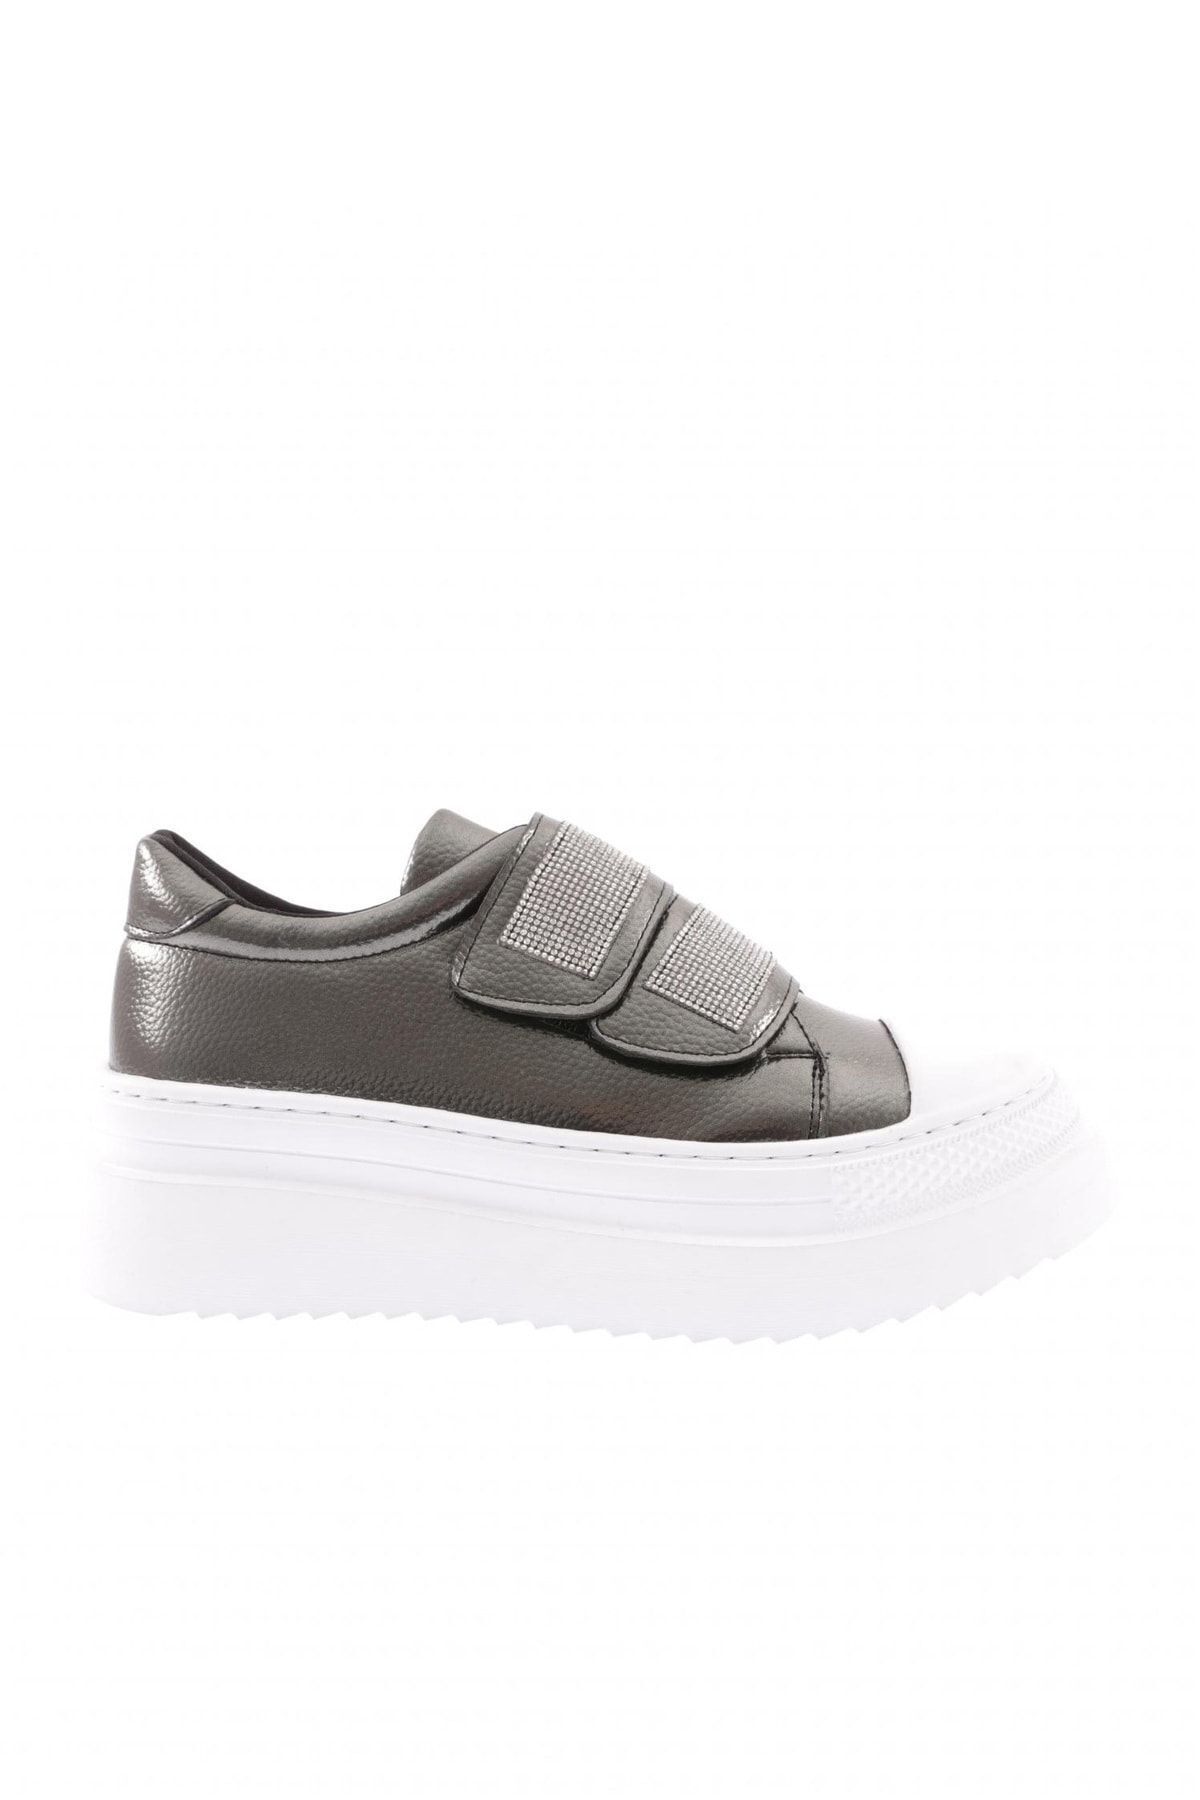 Dgn 898-23y Kadın 2 Cırtlı Bantlari Silver Taşlı Kalın Taban Sneaker Ayakkabı Platin Rolax Beyaz